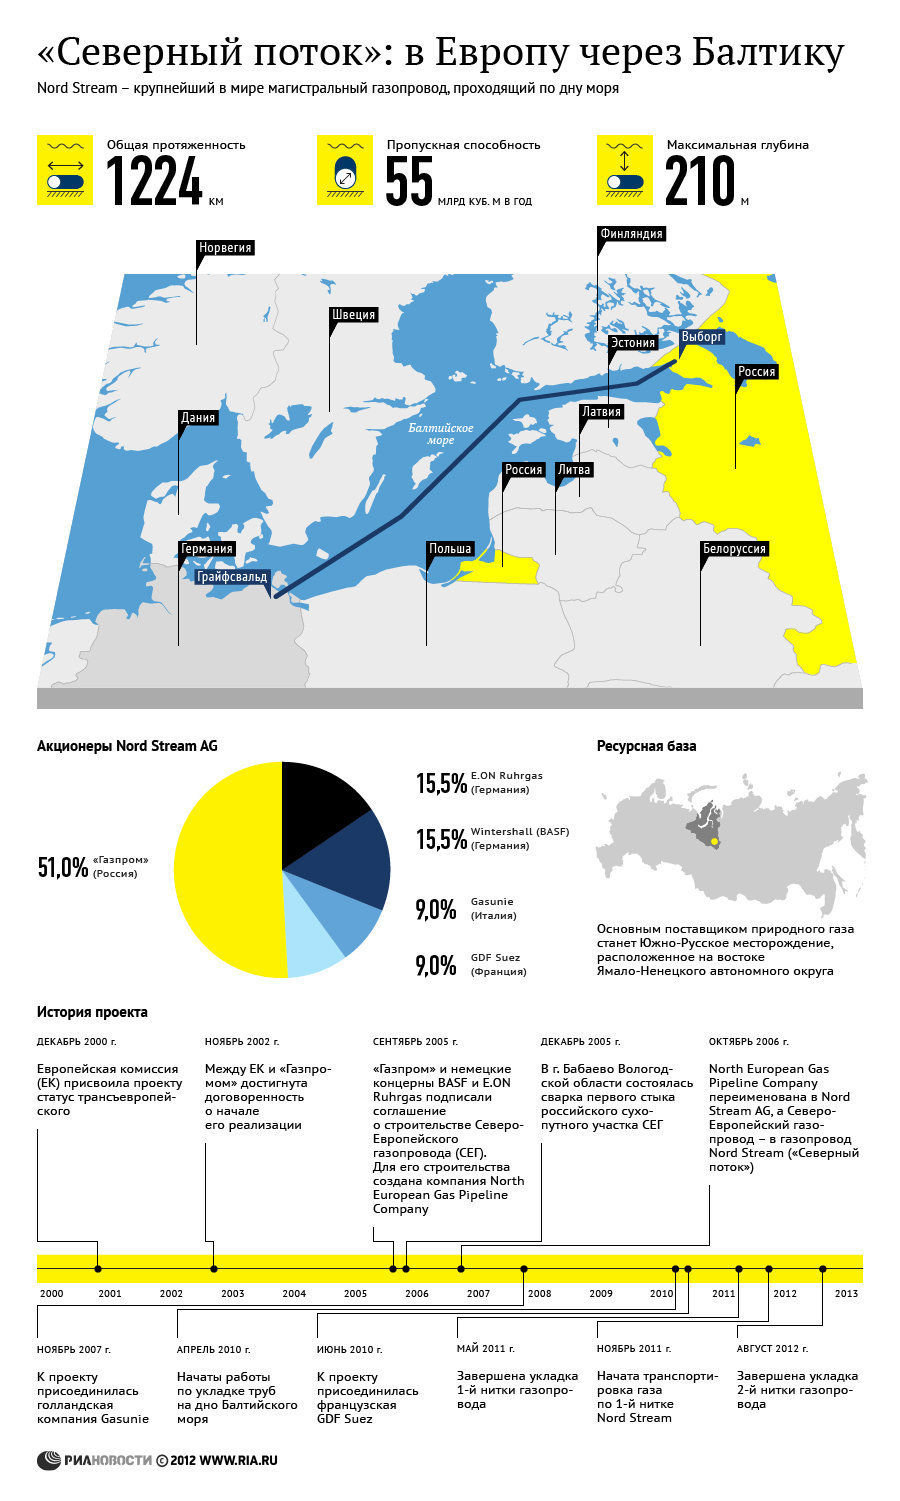 Северный поток: в Европу через Балтику